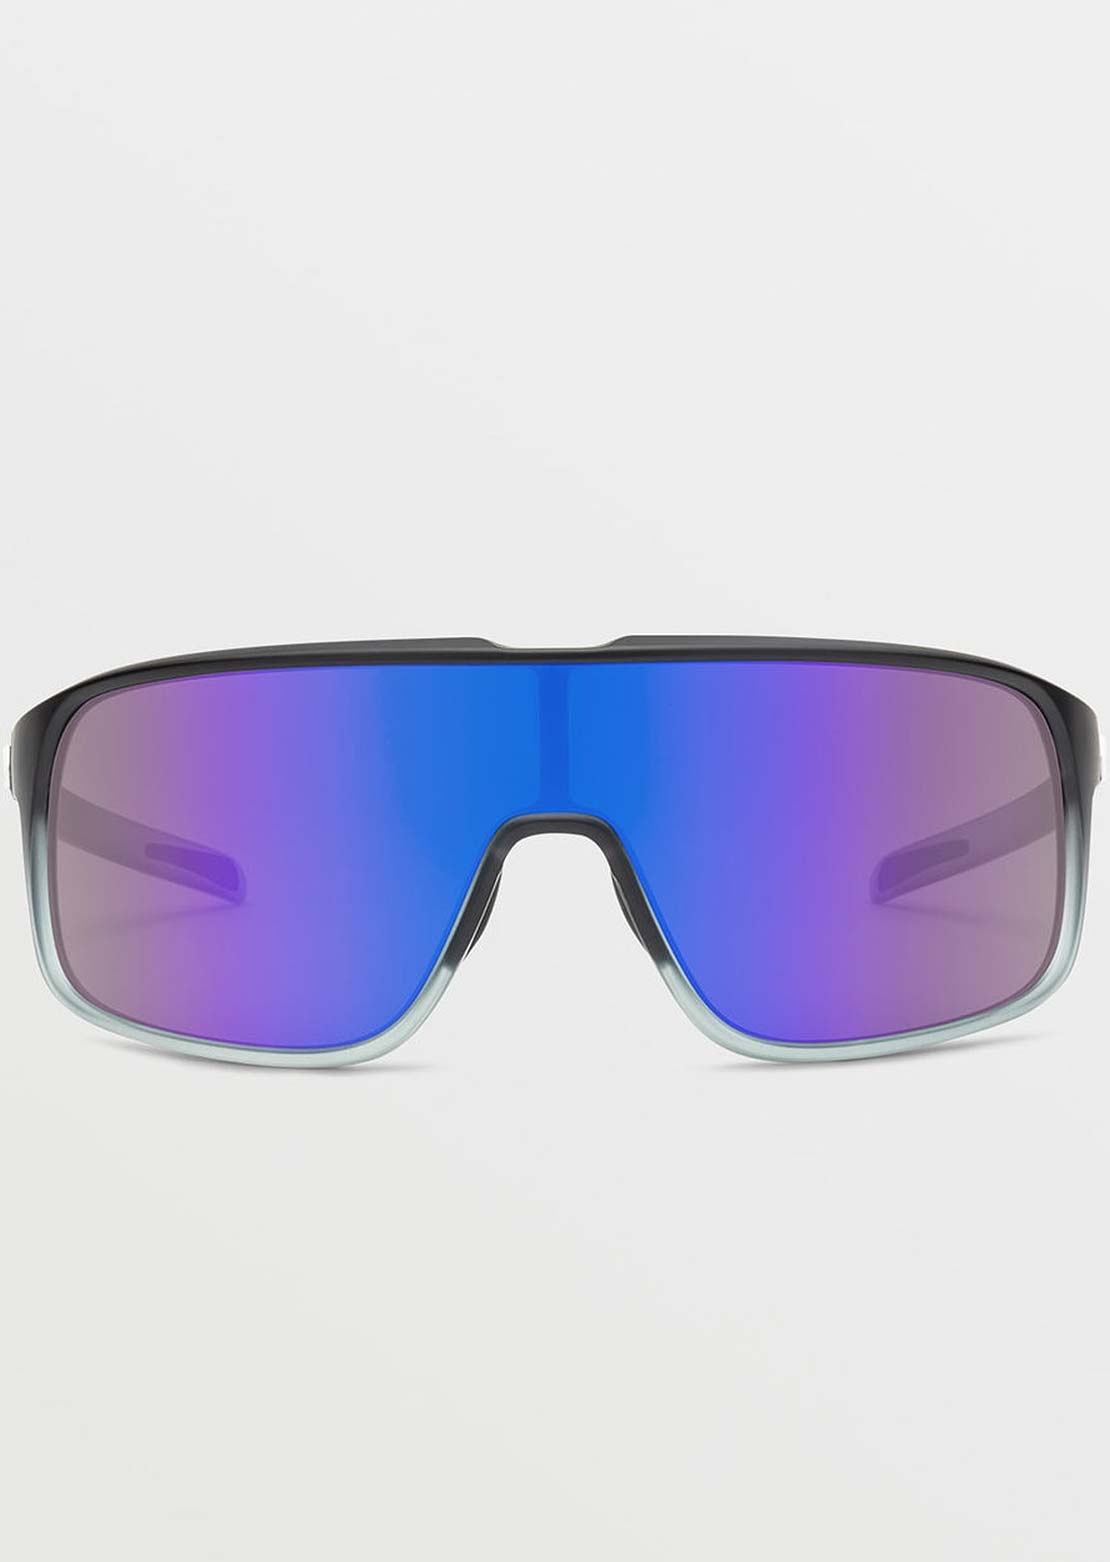  Volcom Macho Sunglasses Matte Black Clear Fade/Gray Blue Mirror